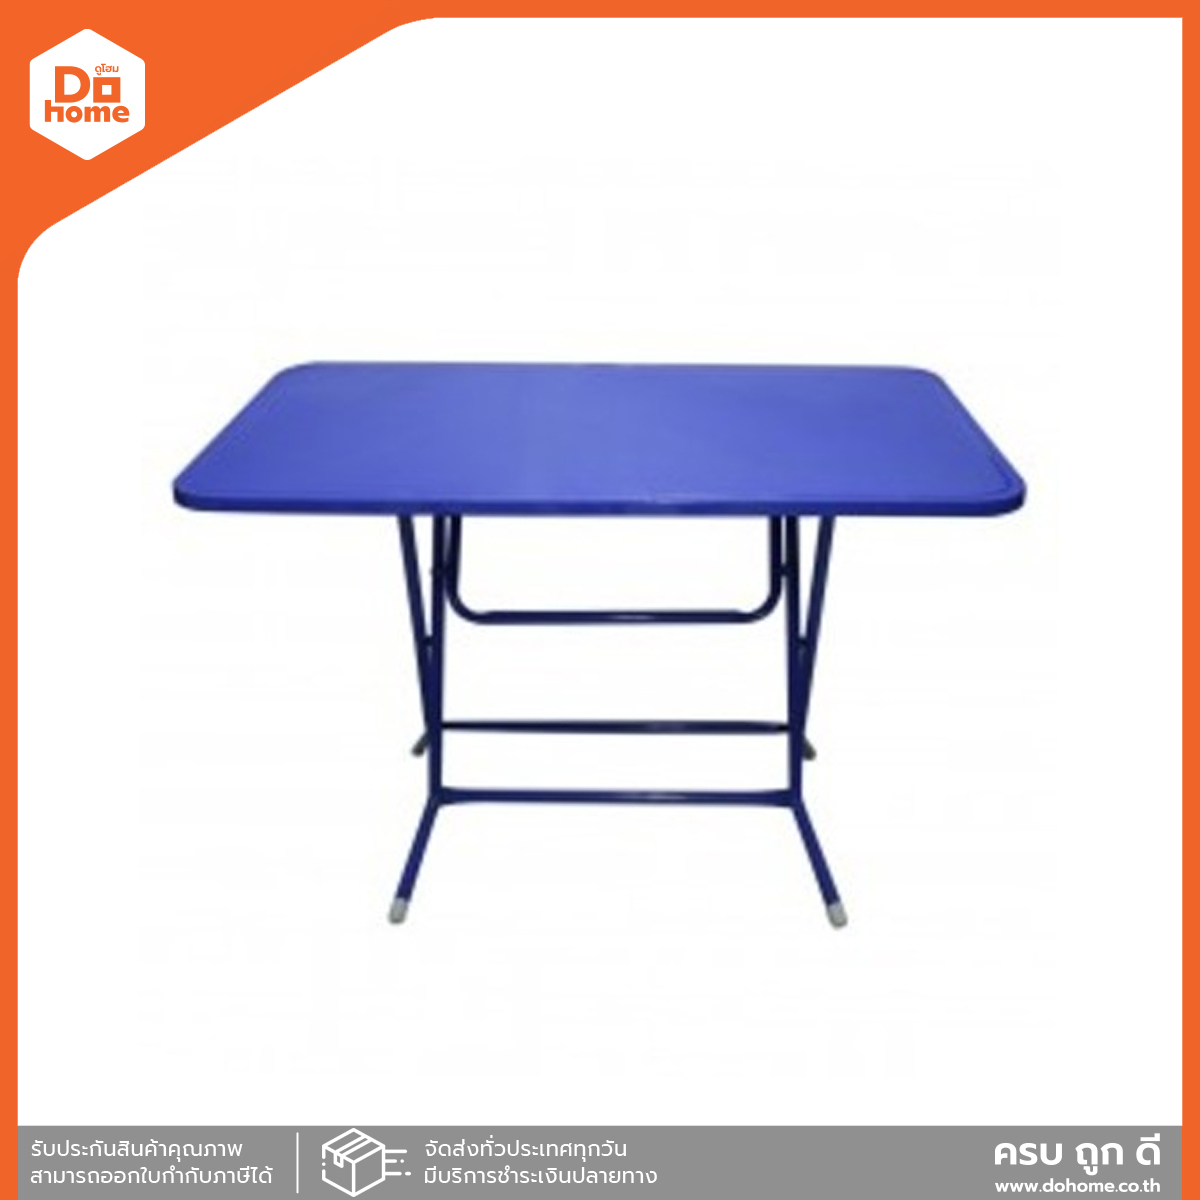 โต๊ะพับเหล็ก ขอบเหล็ก ขนาด 4 ฟุต สีน้ำเงิน |EA|